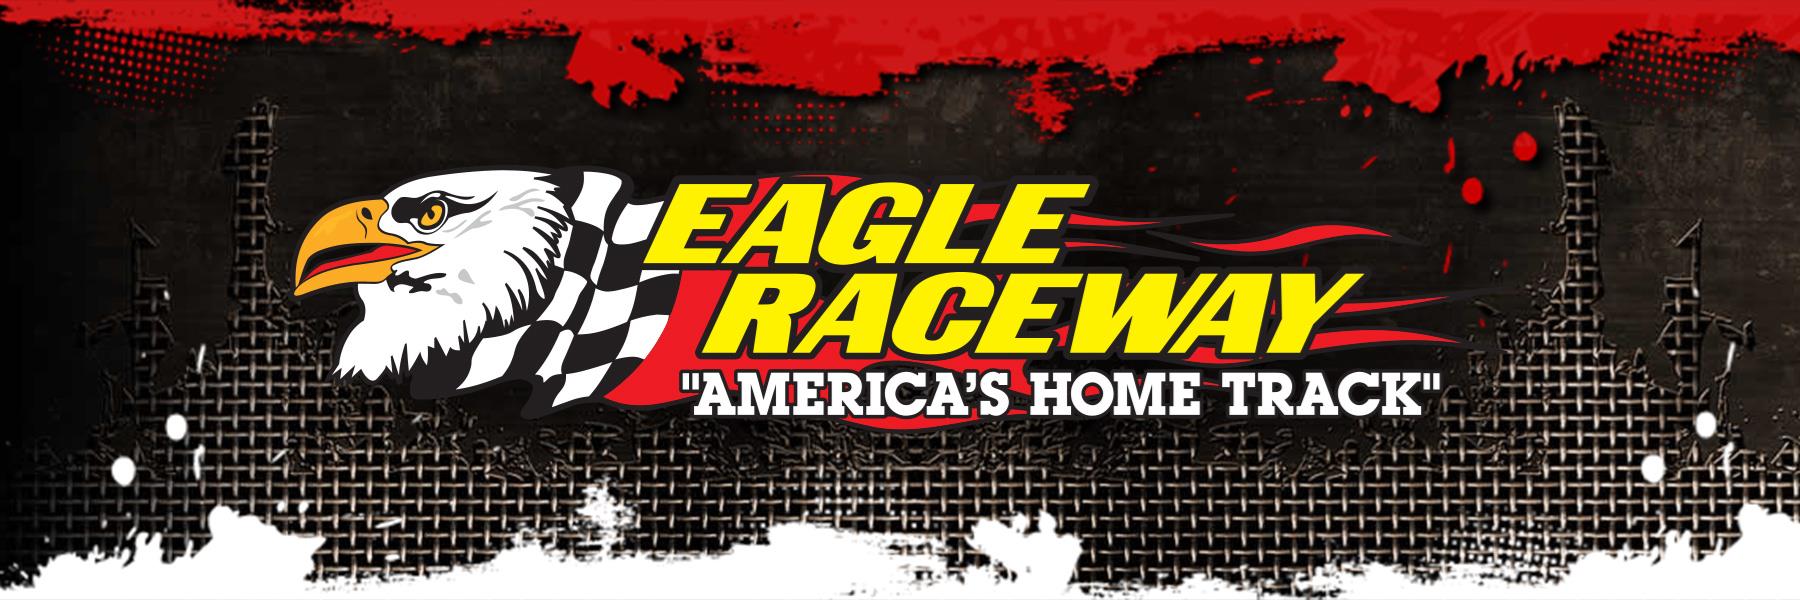 6/20/2015 - Eagle Raceway